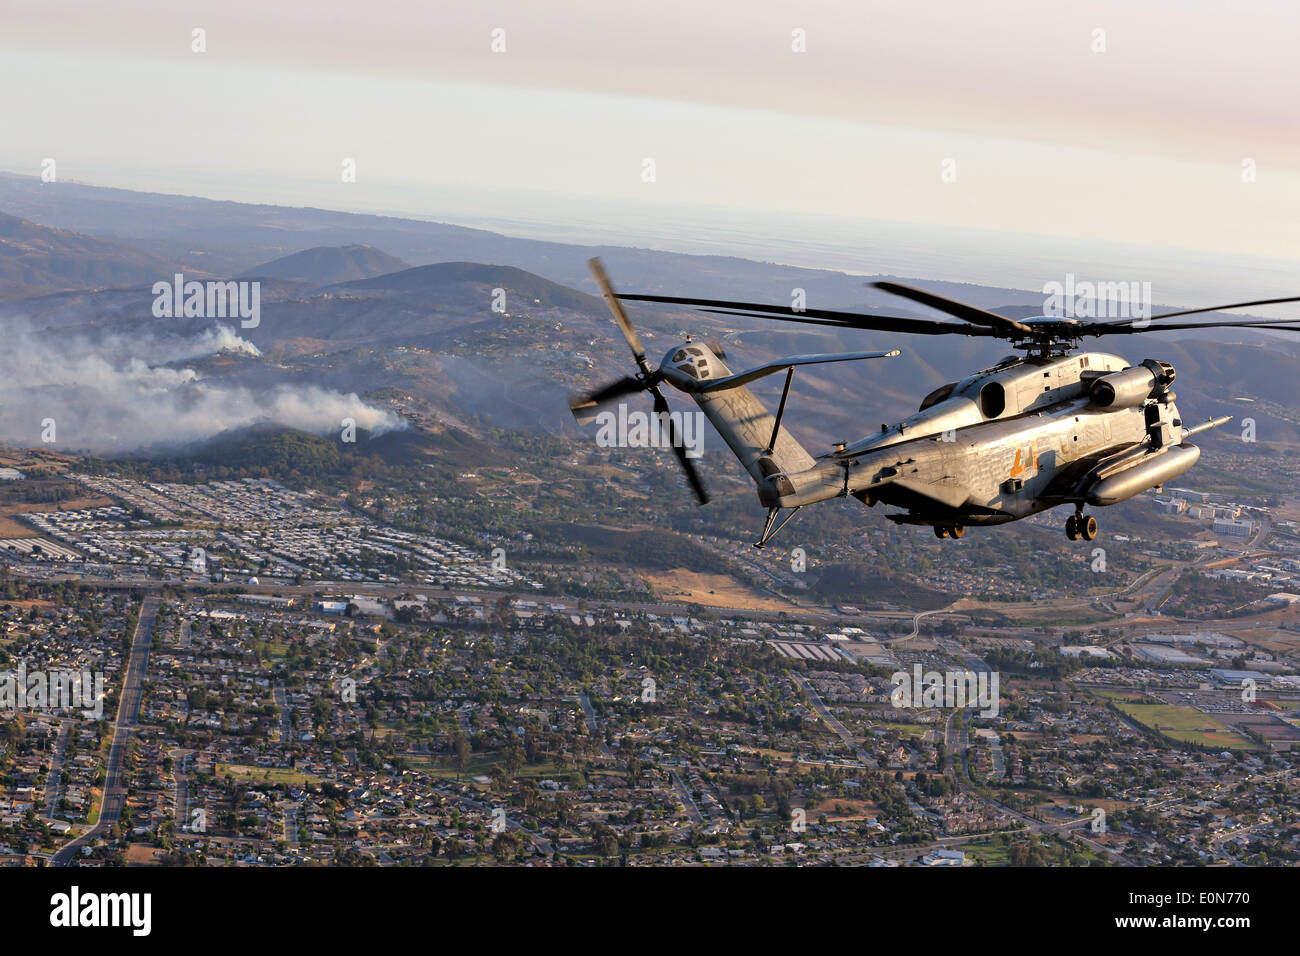 Un US Marine Corps CH-53D Sea Stallion elicottero si avvicina al Cocos wildfire per assistere nella lotta antincendio Maggio 15, 2014 intorno a San Marcos, California. Le evacuazioni forzate oltre 13.000 persone dalle loro case come il fuoco bruciavano attraverso San Diego County. Foto Stock